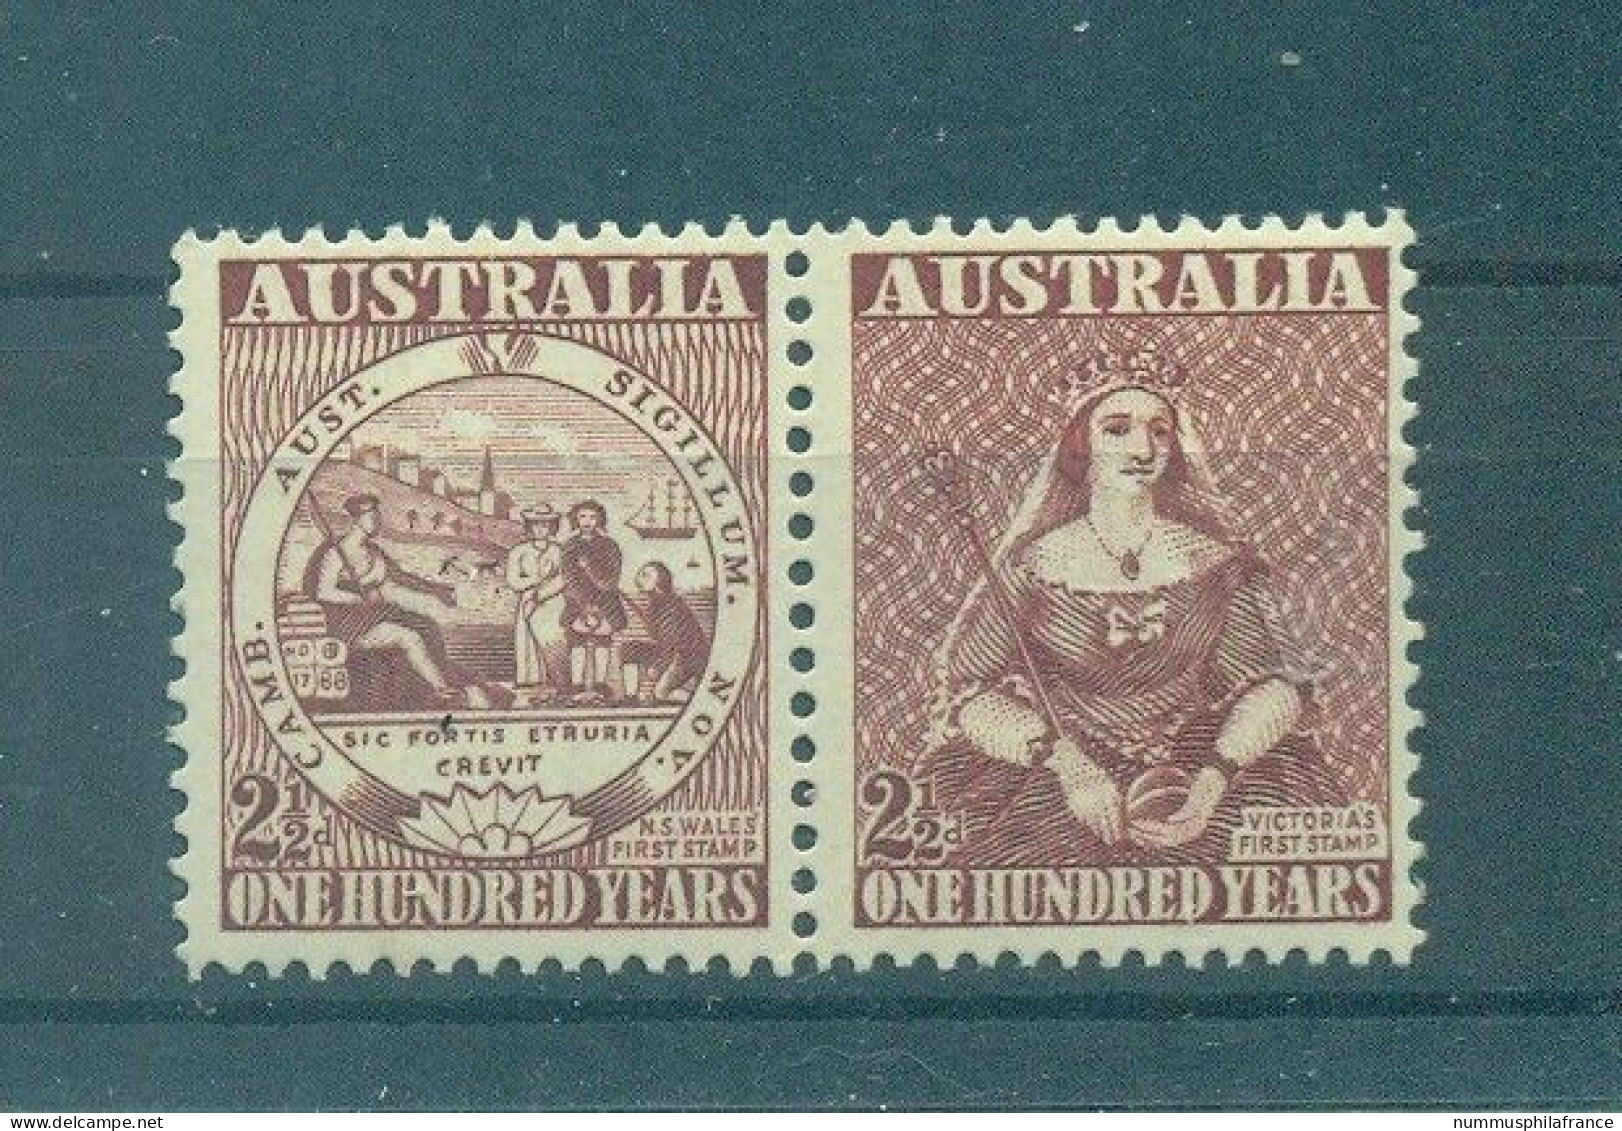 Australie 1950 - Y & T N. 175/76 - Timbre Australien (Michel N. 207/08) - Mint Stamps